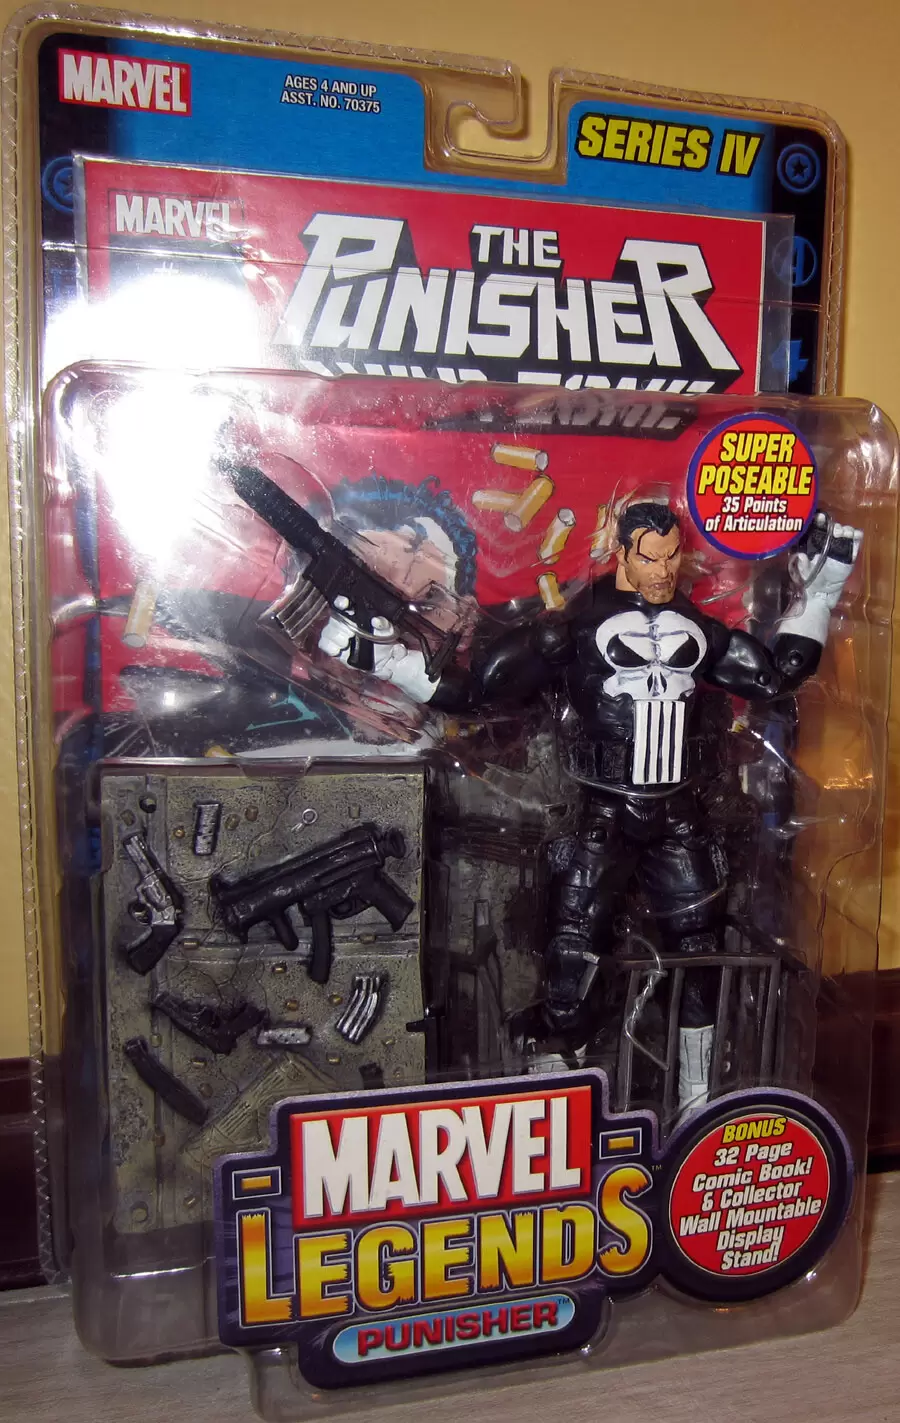 Marvel Legends - Punisher (Movie version) - Serie 6 - ToyBiz